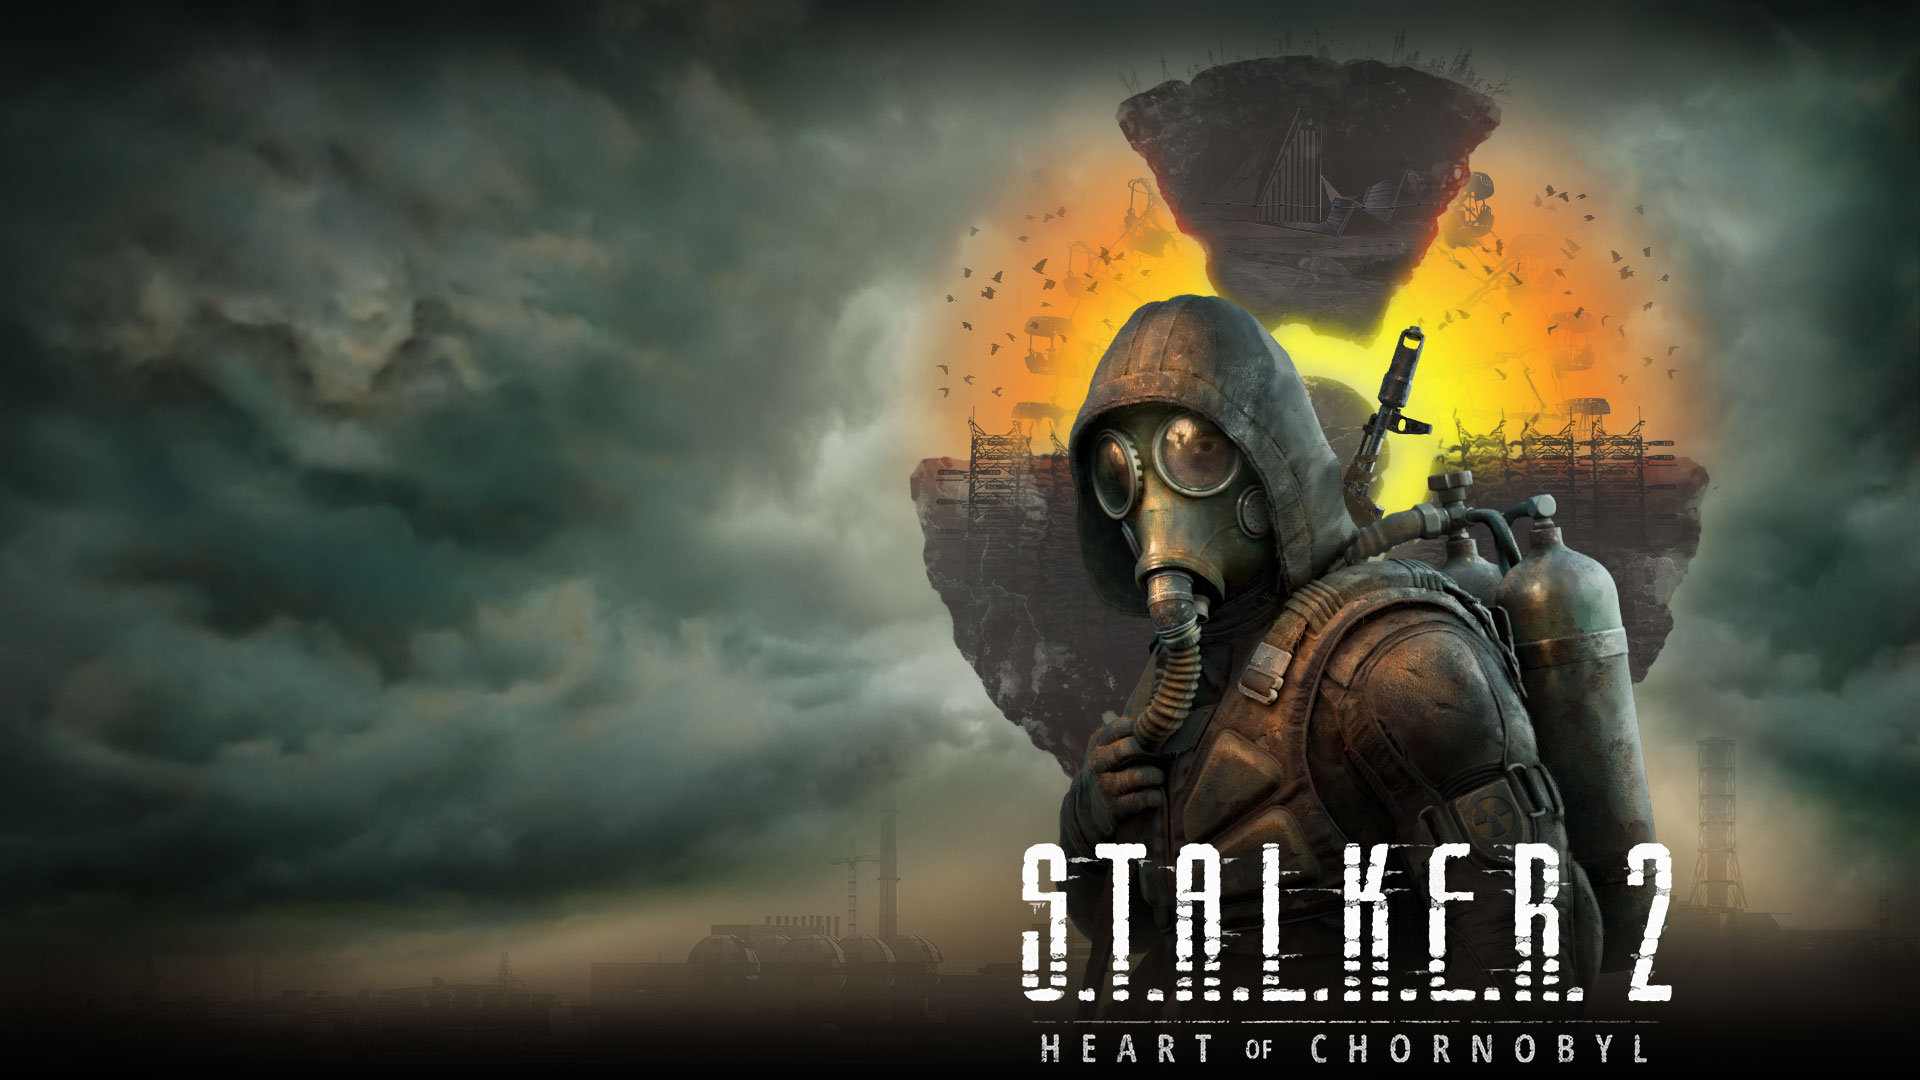 Stalker 2 Heart of Chornobyl, een personage staat voor een zwevend landschap met wolken en rook in de lucht.